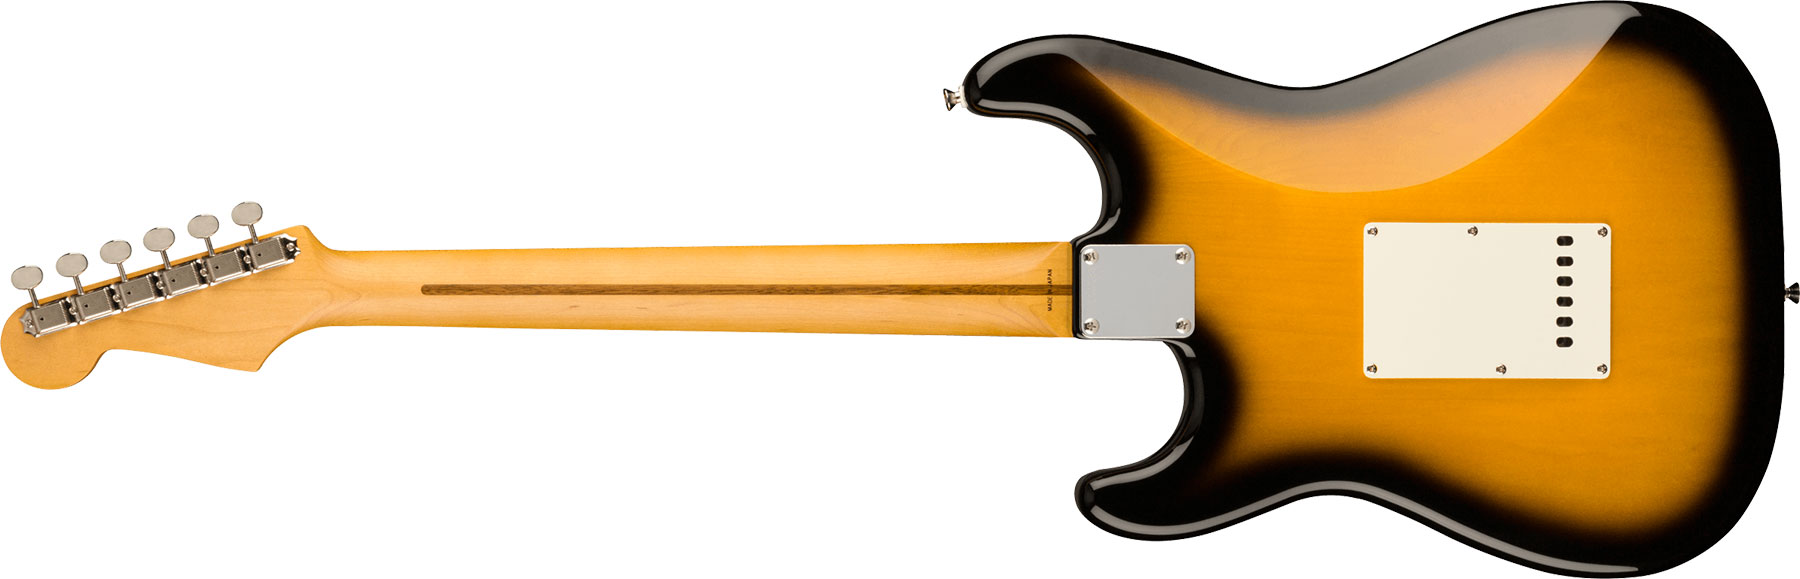 Fender Strat Jv Modified '50s Jap Hss Trem Mn - 2-color Sunburst - Guitare Électrique Forme Str - Variation 1